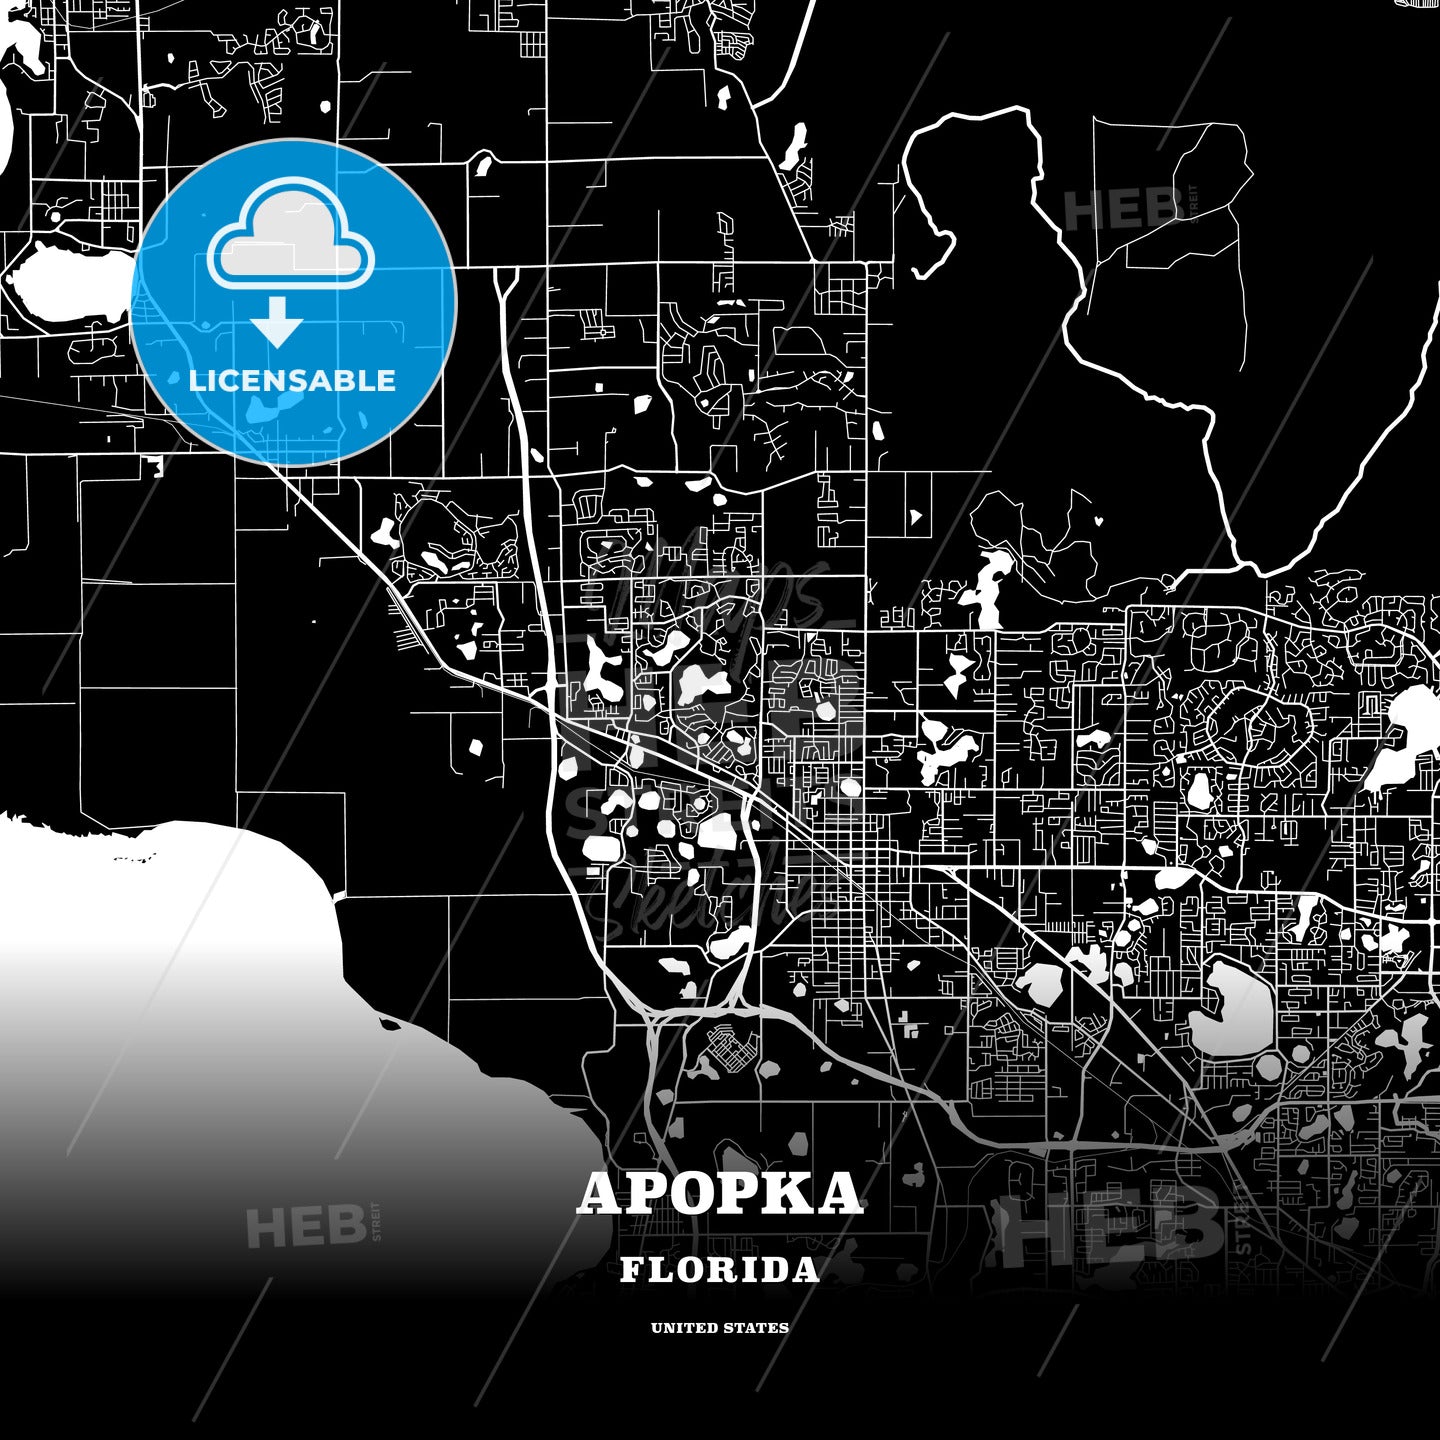 Apopka, Florida, USA map